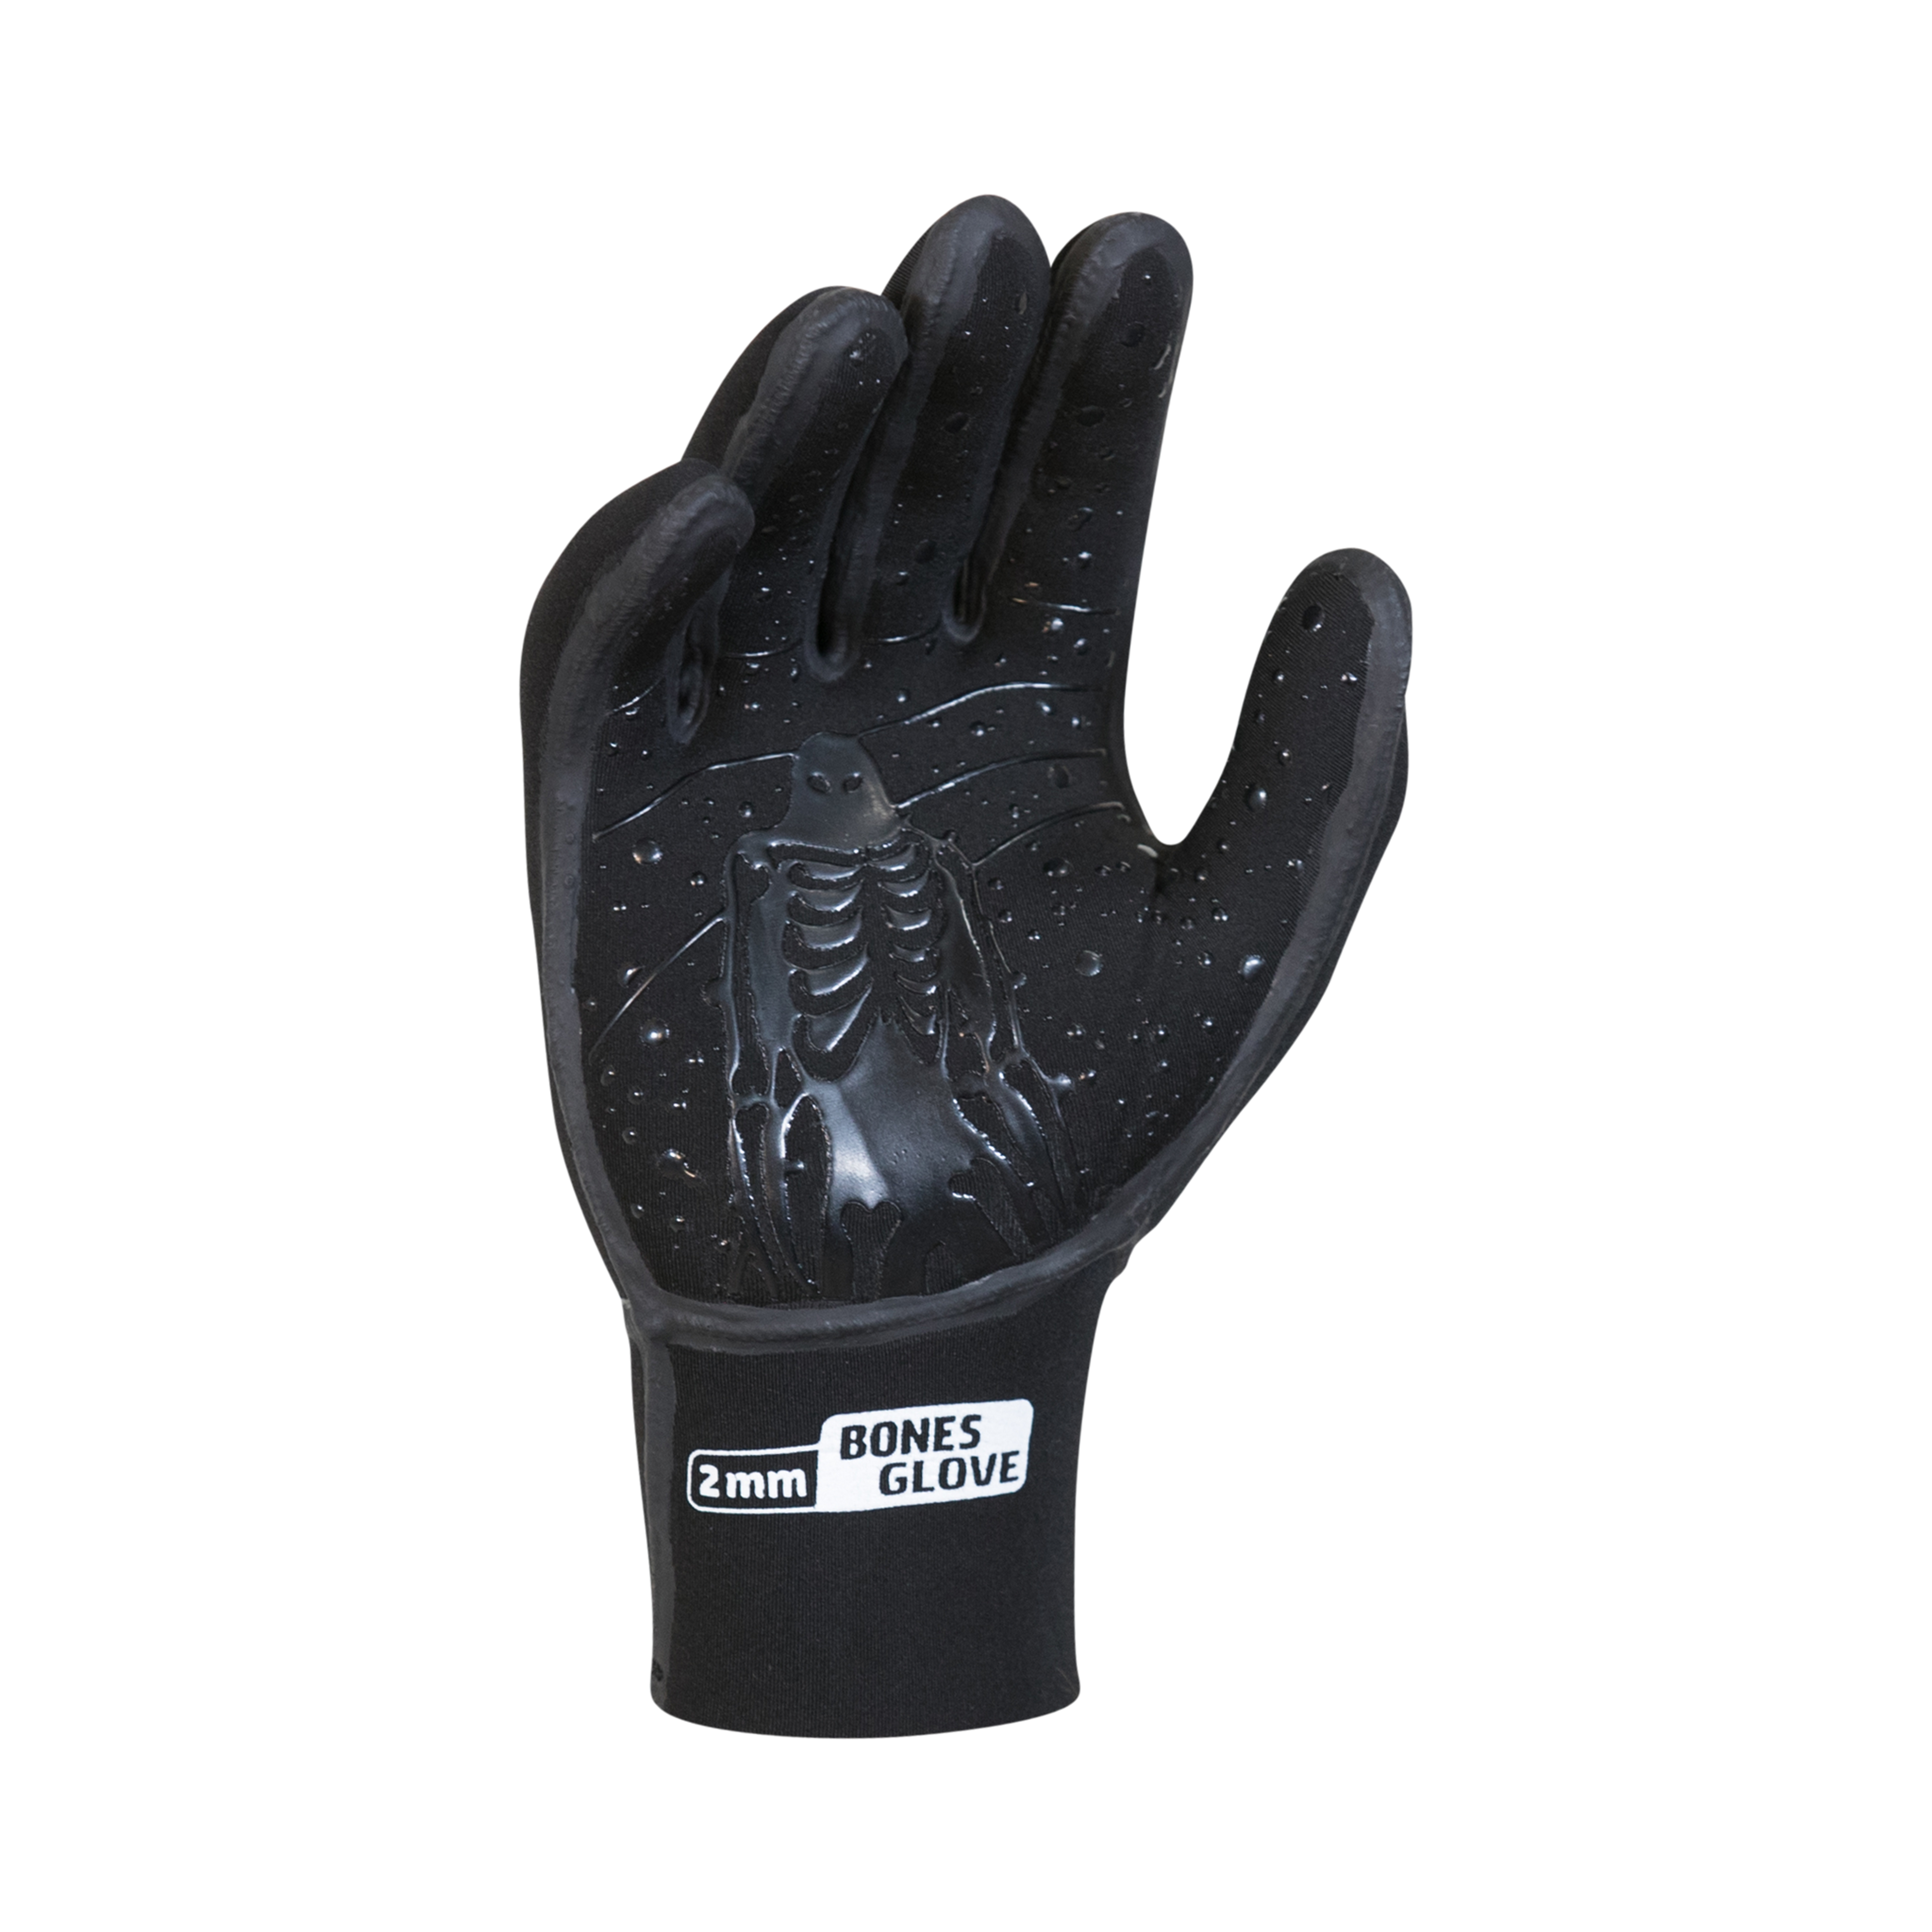 2MM 5 Finger Glove Unisex- Black/White Bones